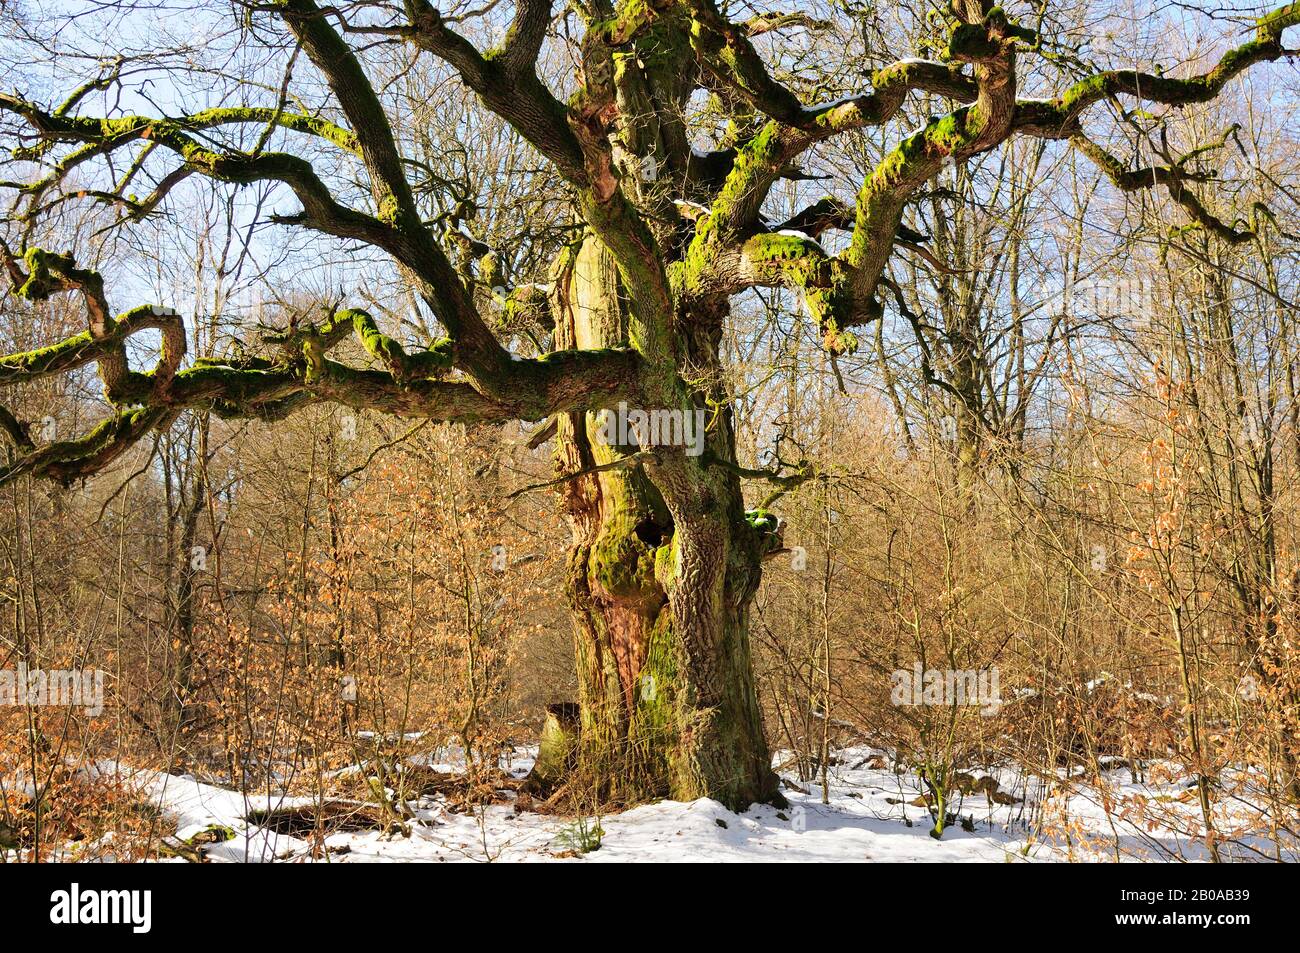 common oak, pedunculate oak, English oak (Quercus robur. Quercus pedunculata), oak in winter, Germany, North Rhine-Westphalia Stock Photo